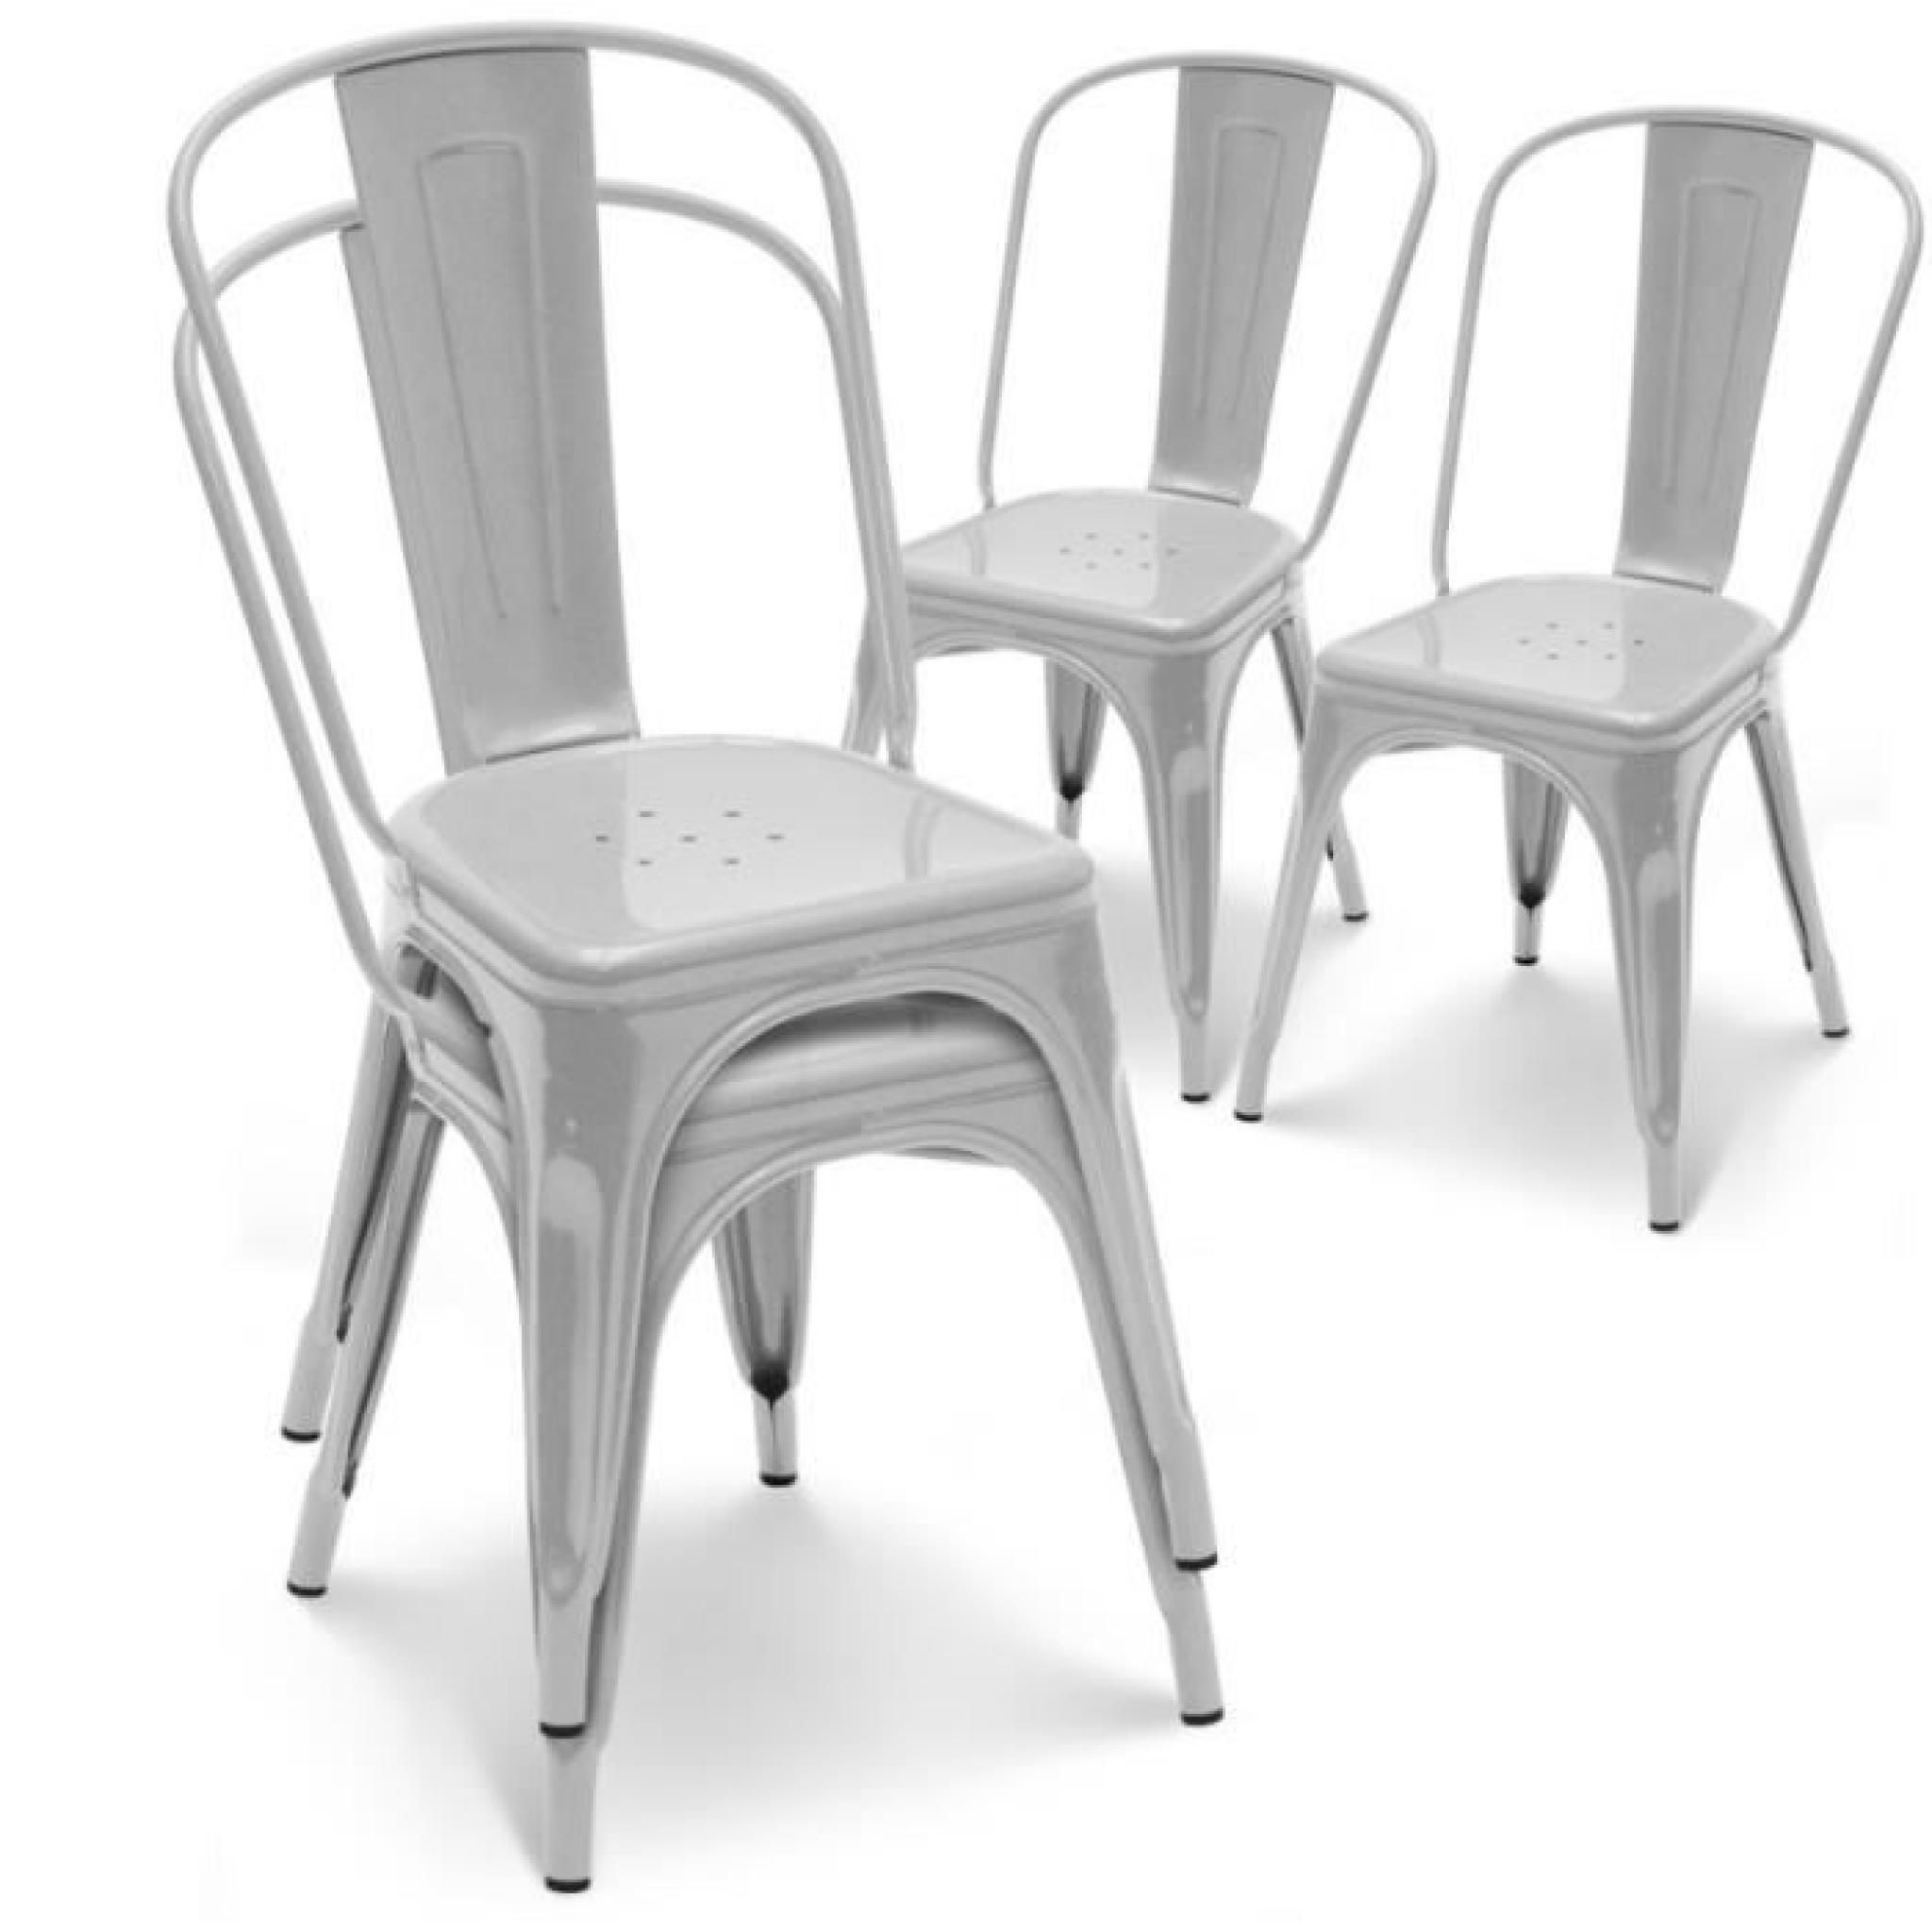 Chaise en métal gris empilable lot de 4